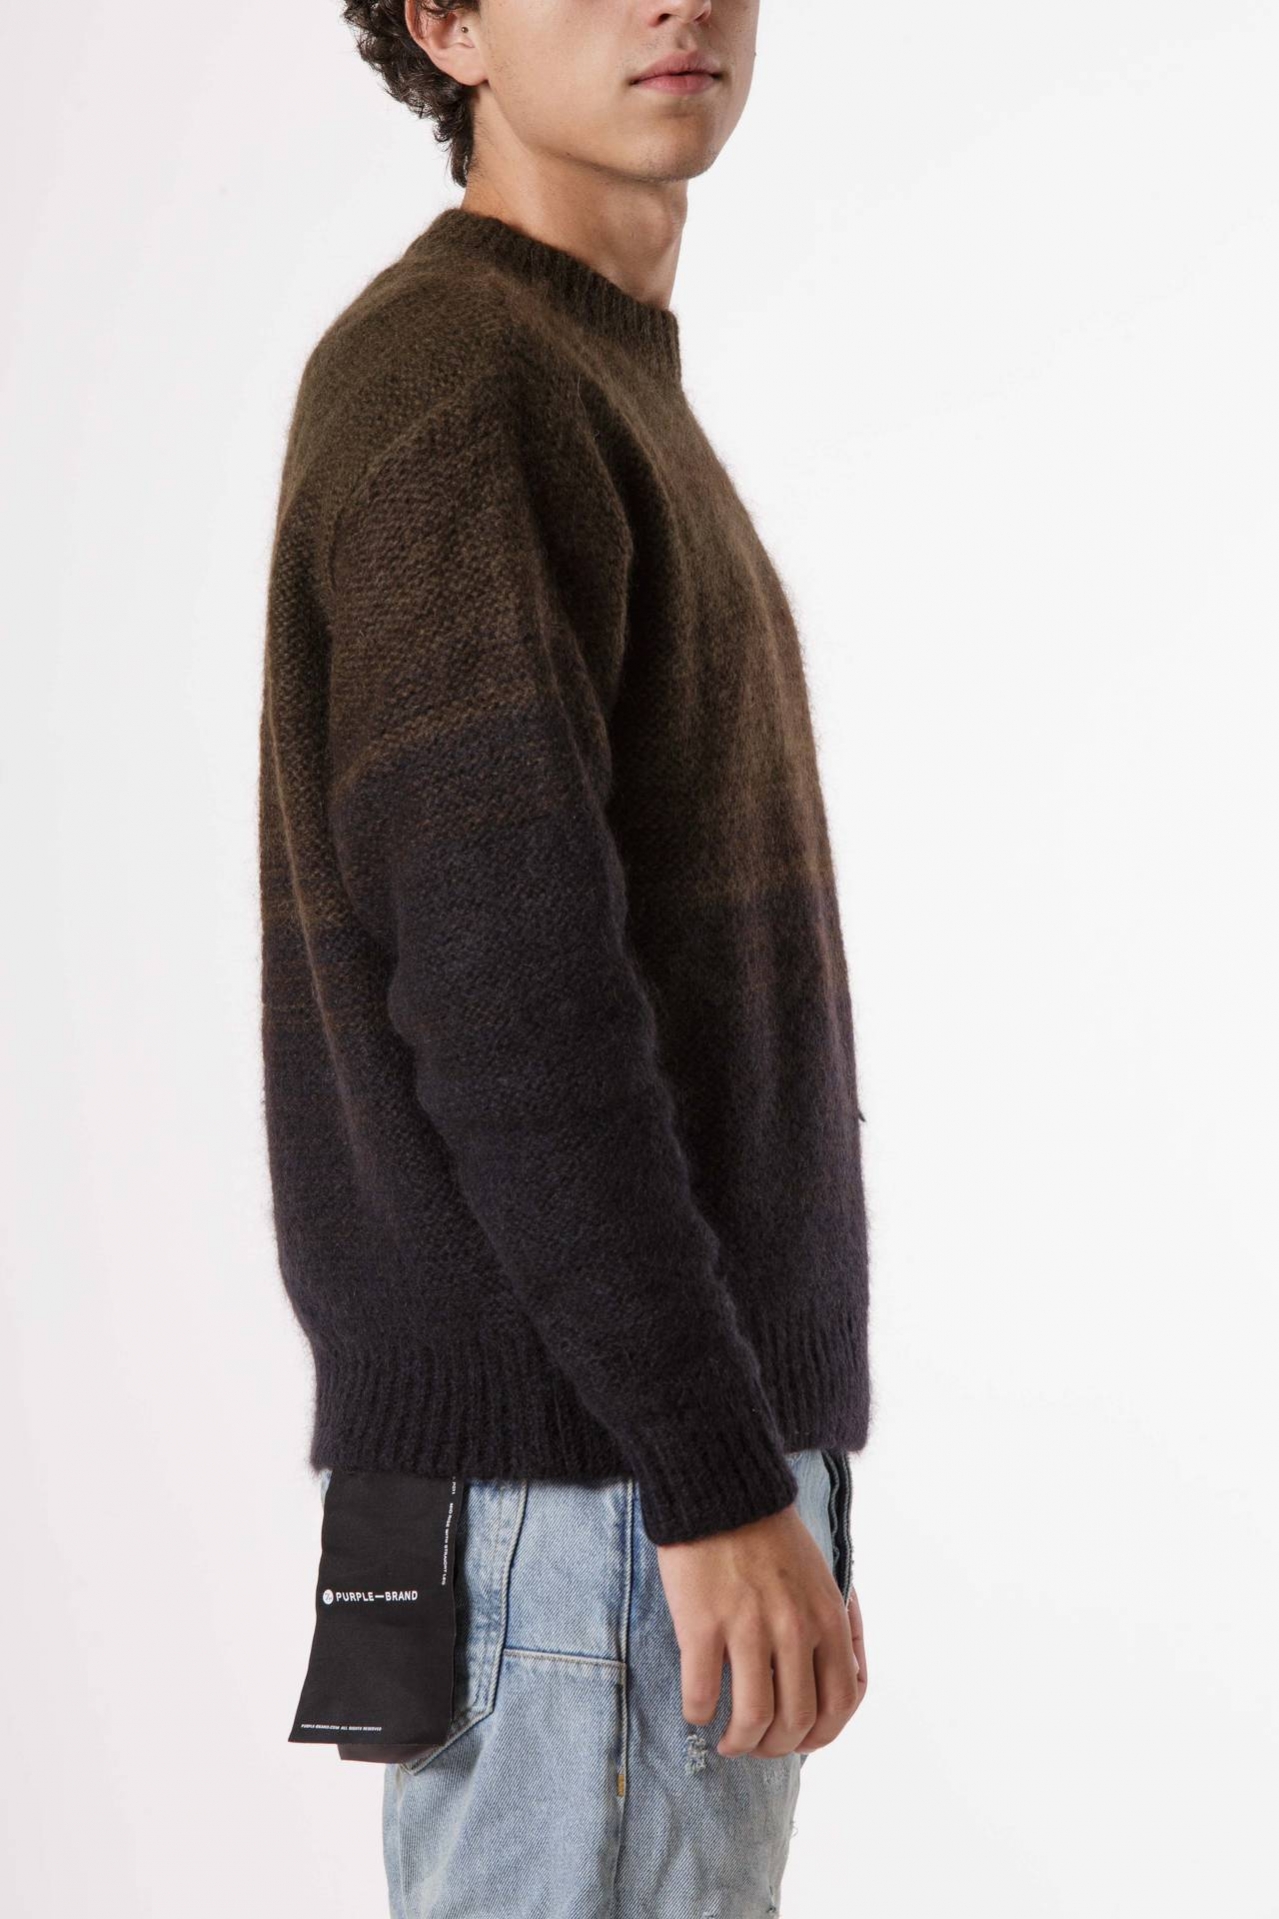 Wool sweater